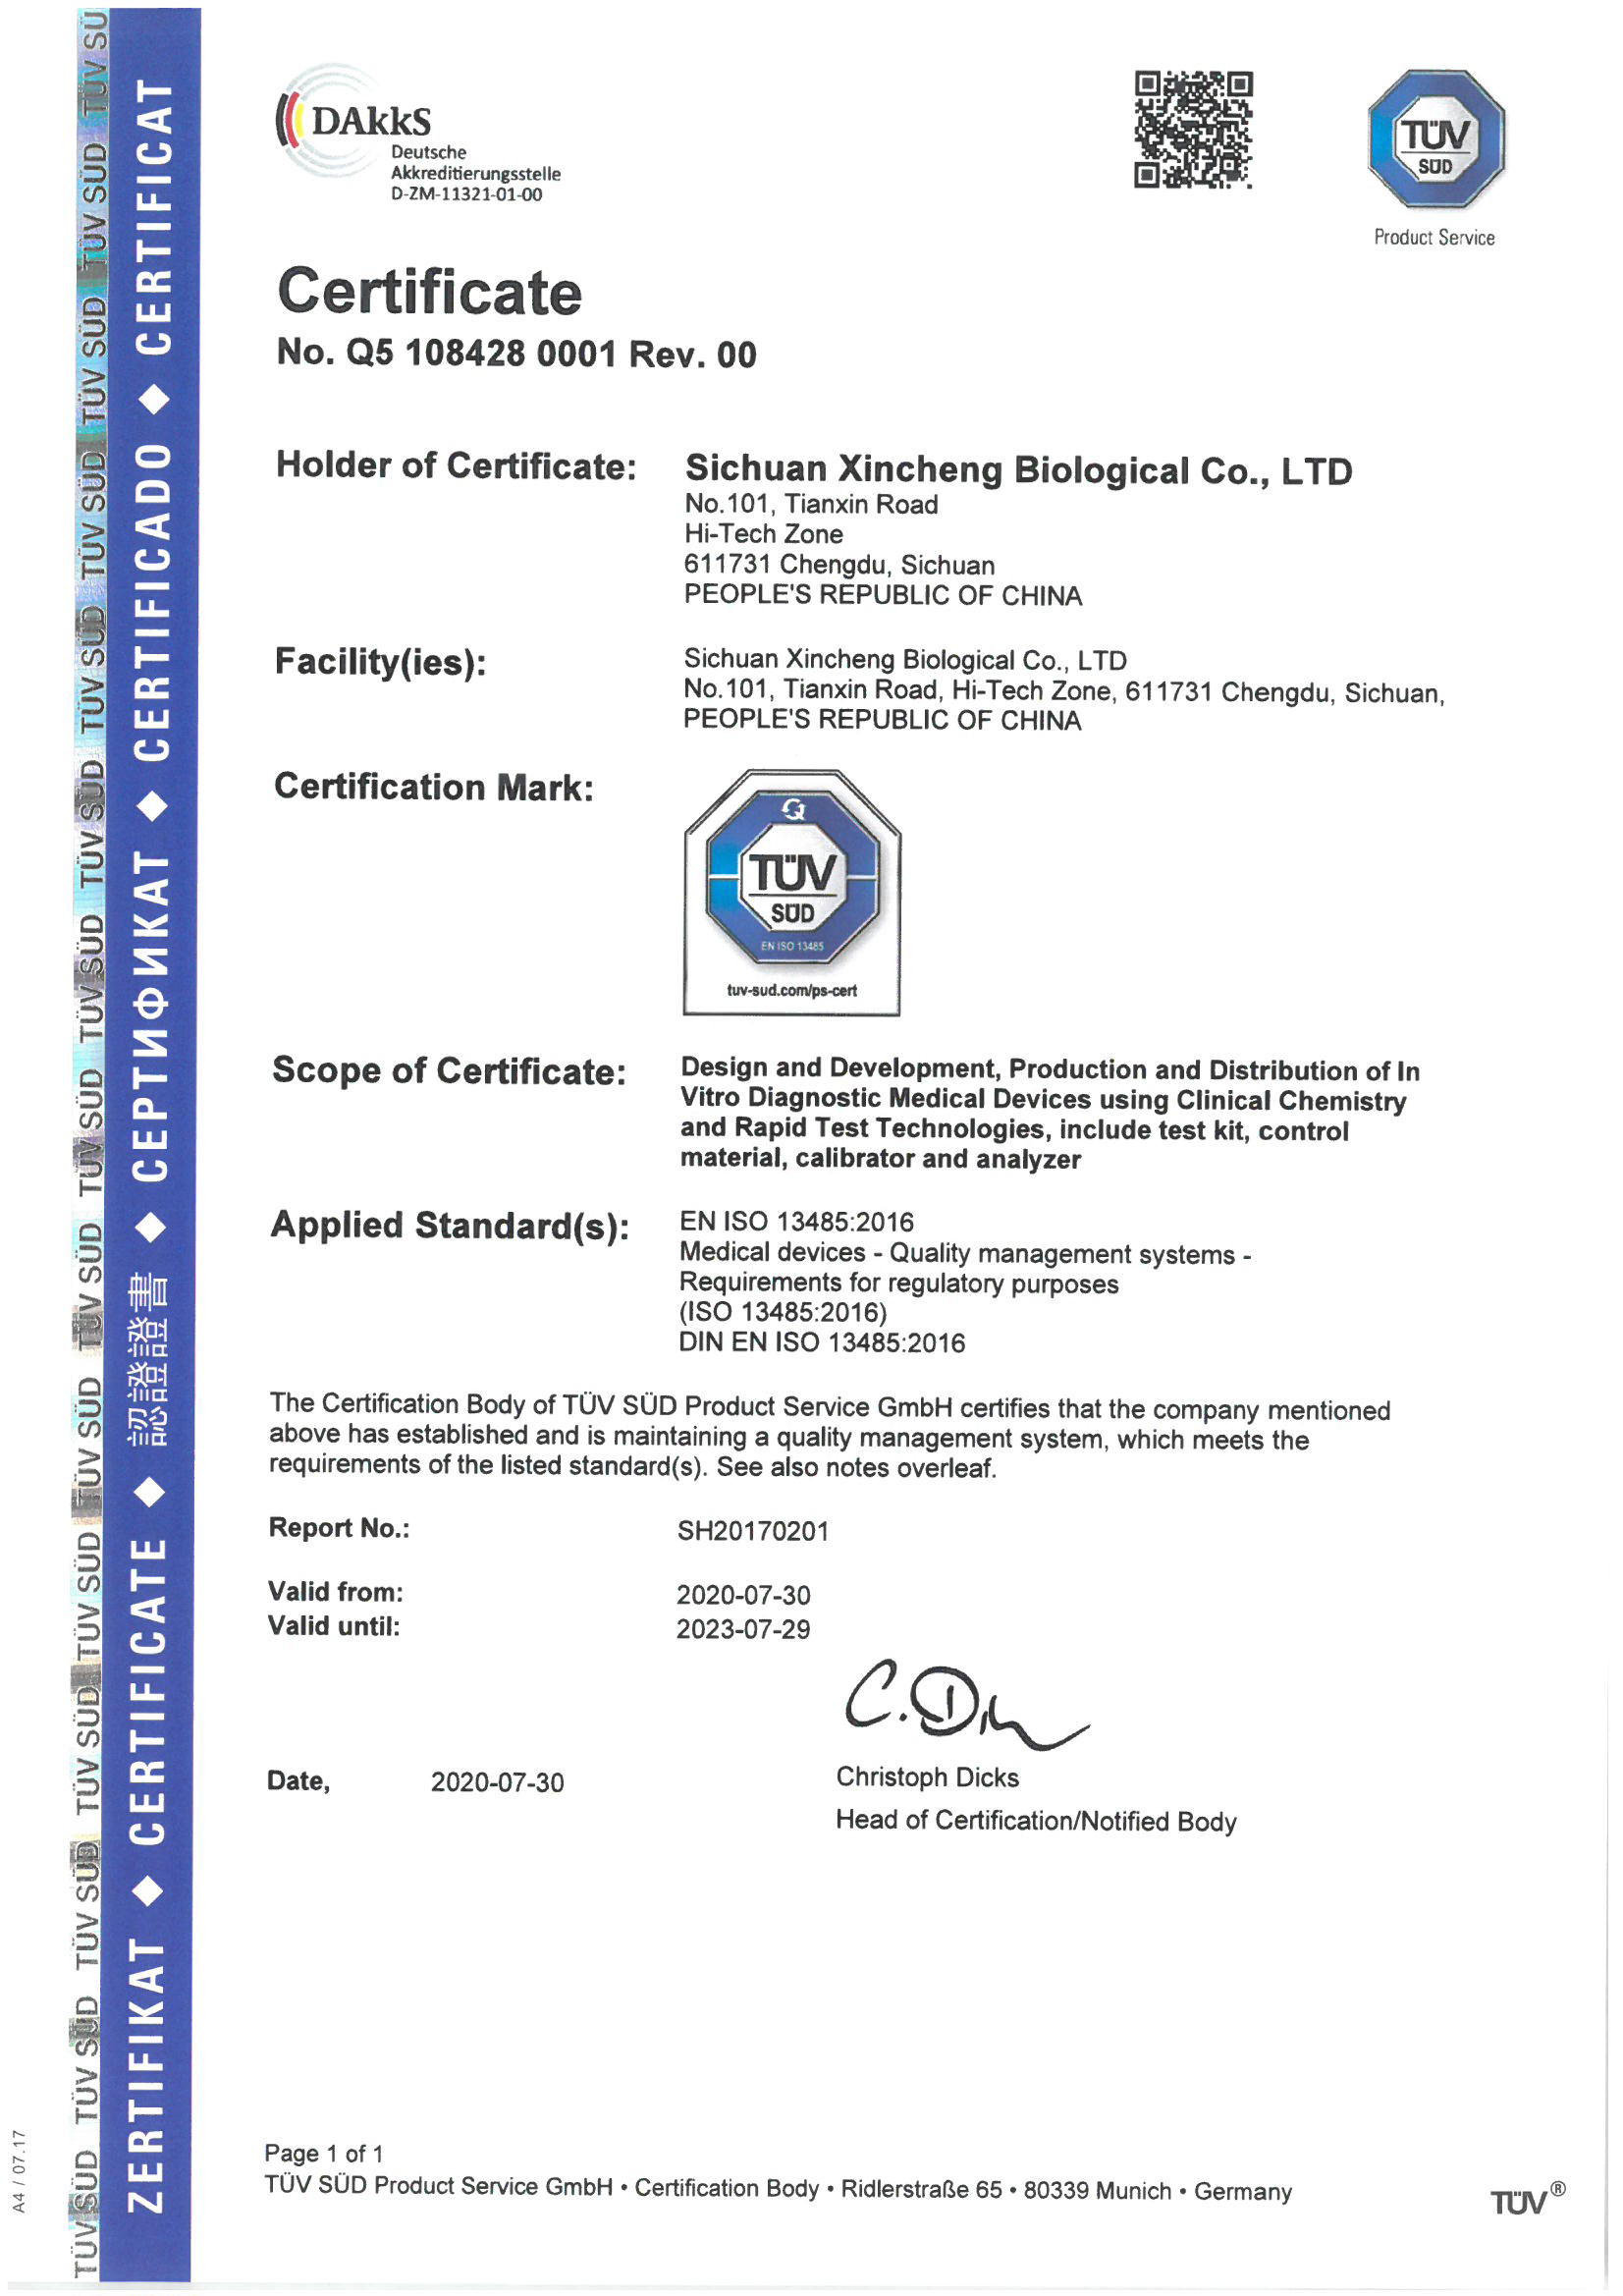 China Sichuan Xincheng Biological Co., Ltd. Certification